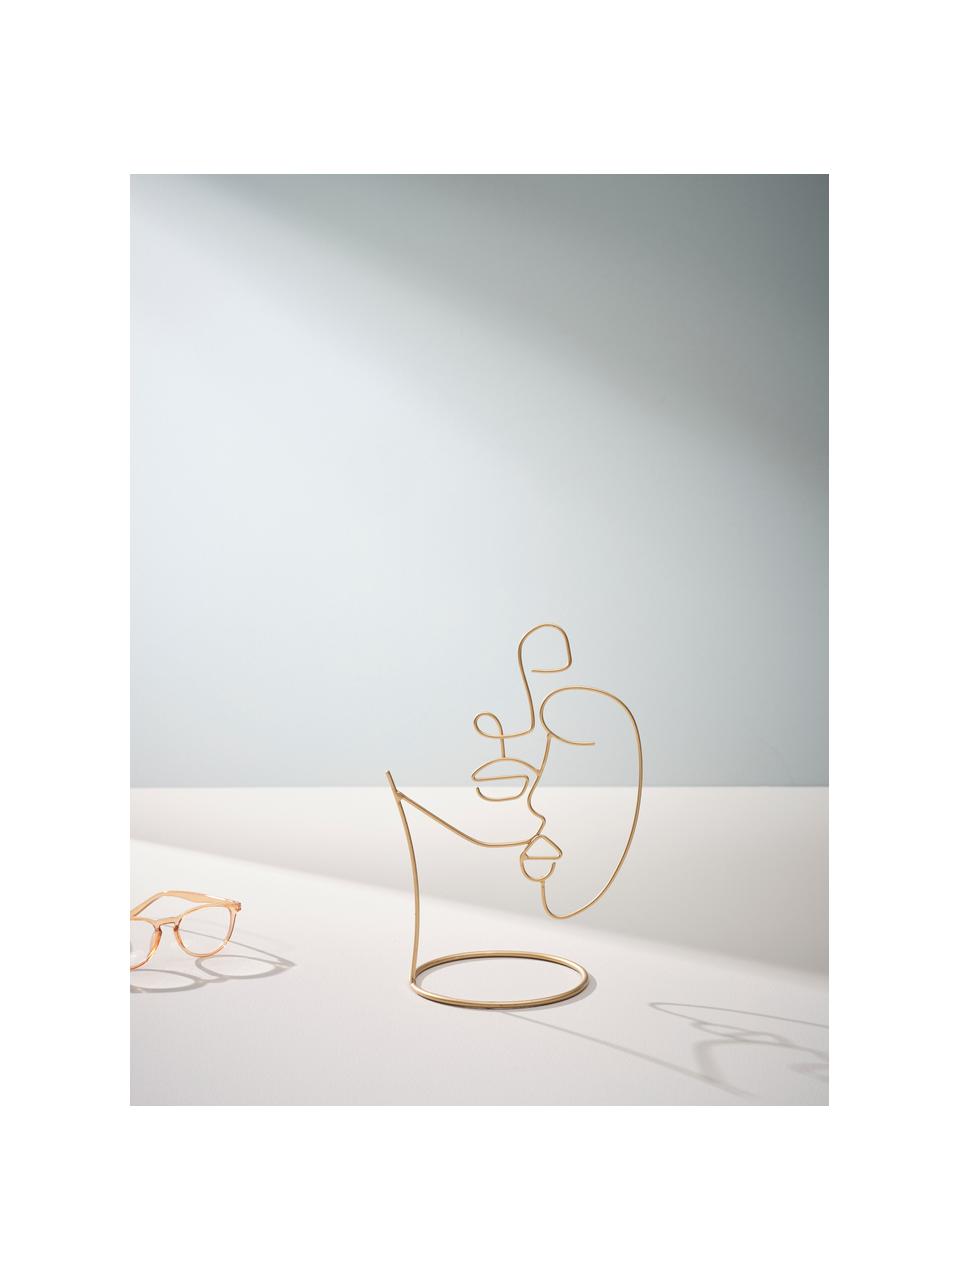 Objet décoratif Halo, Acier, enduit, Couleur laitonnée, larg. 19 x haut. 28 cm